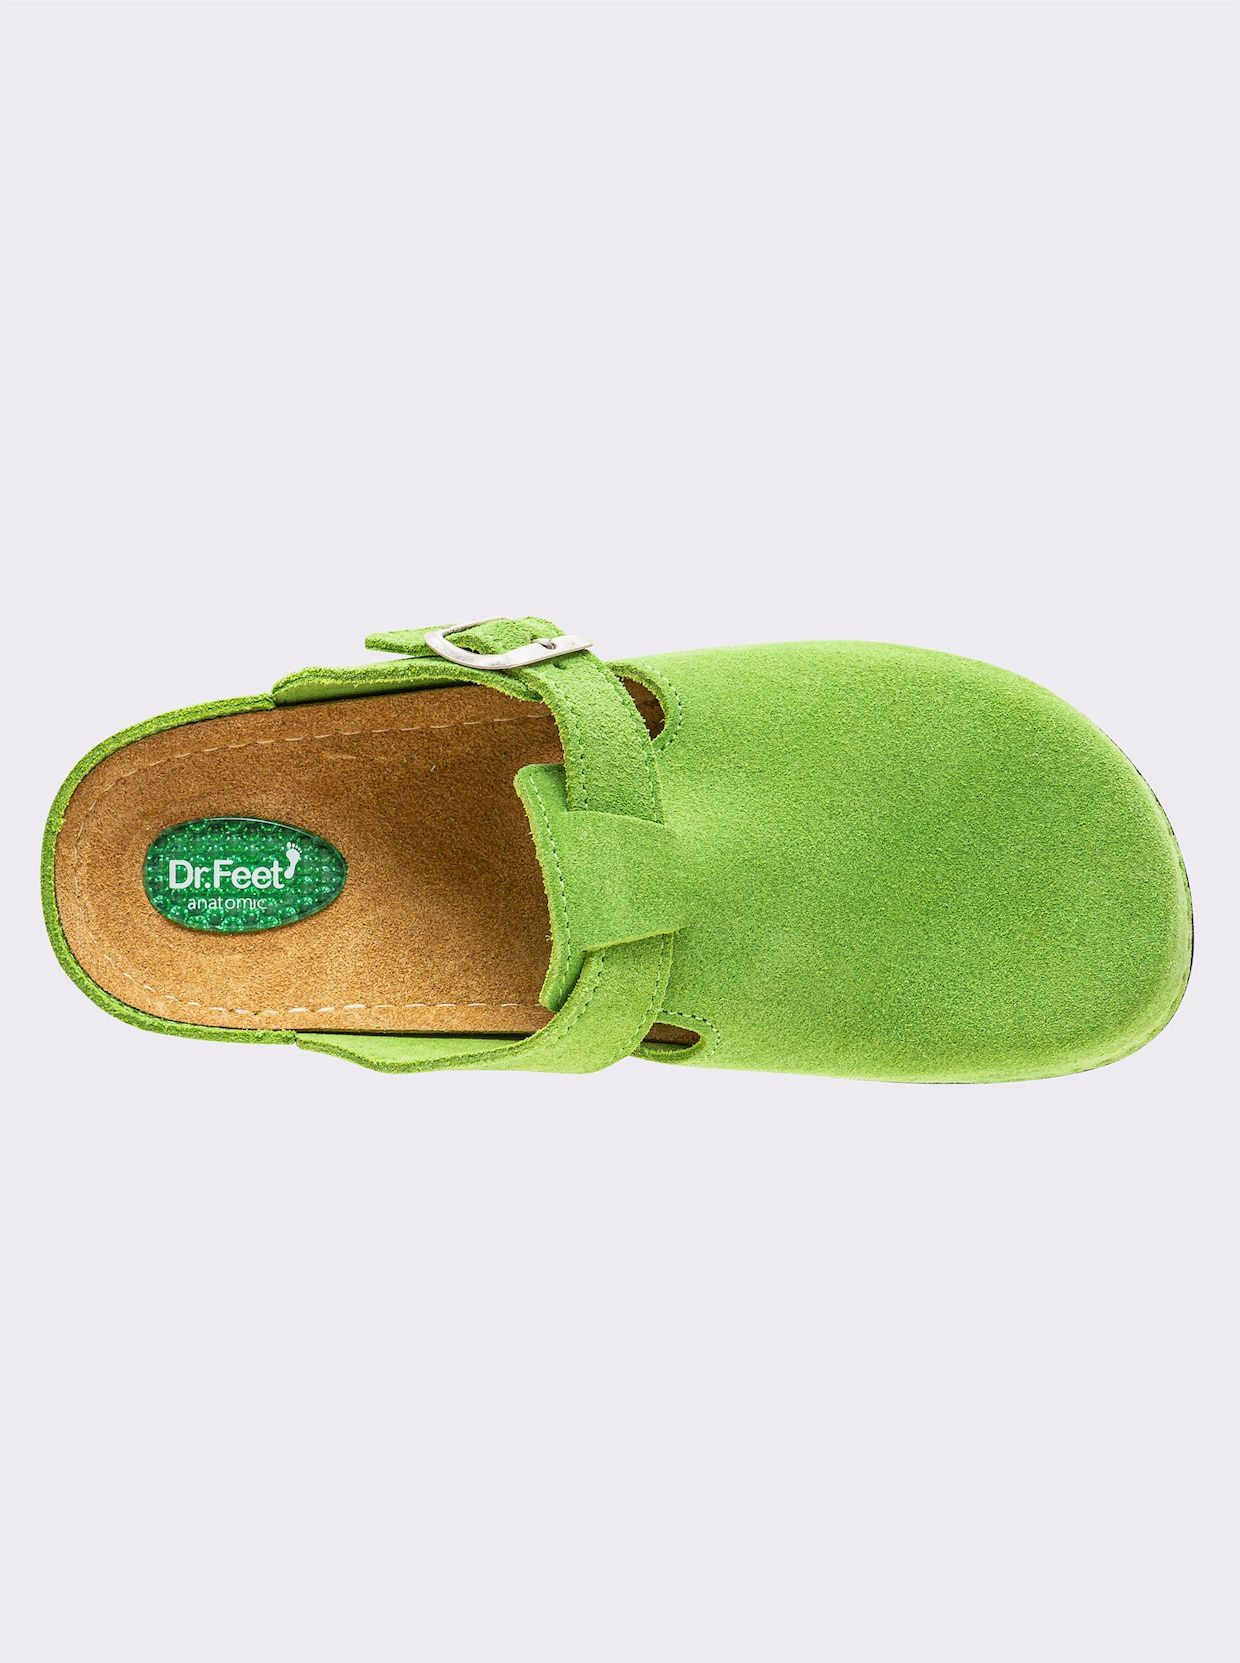 Dr. Feet Pantolette - grün